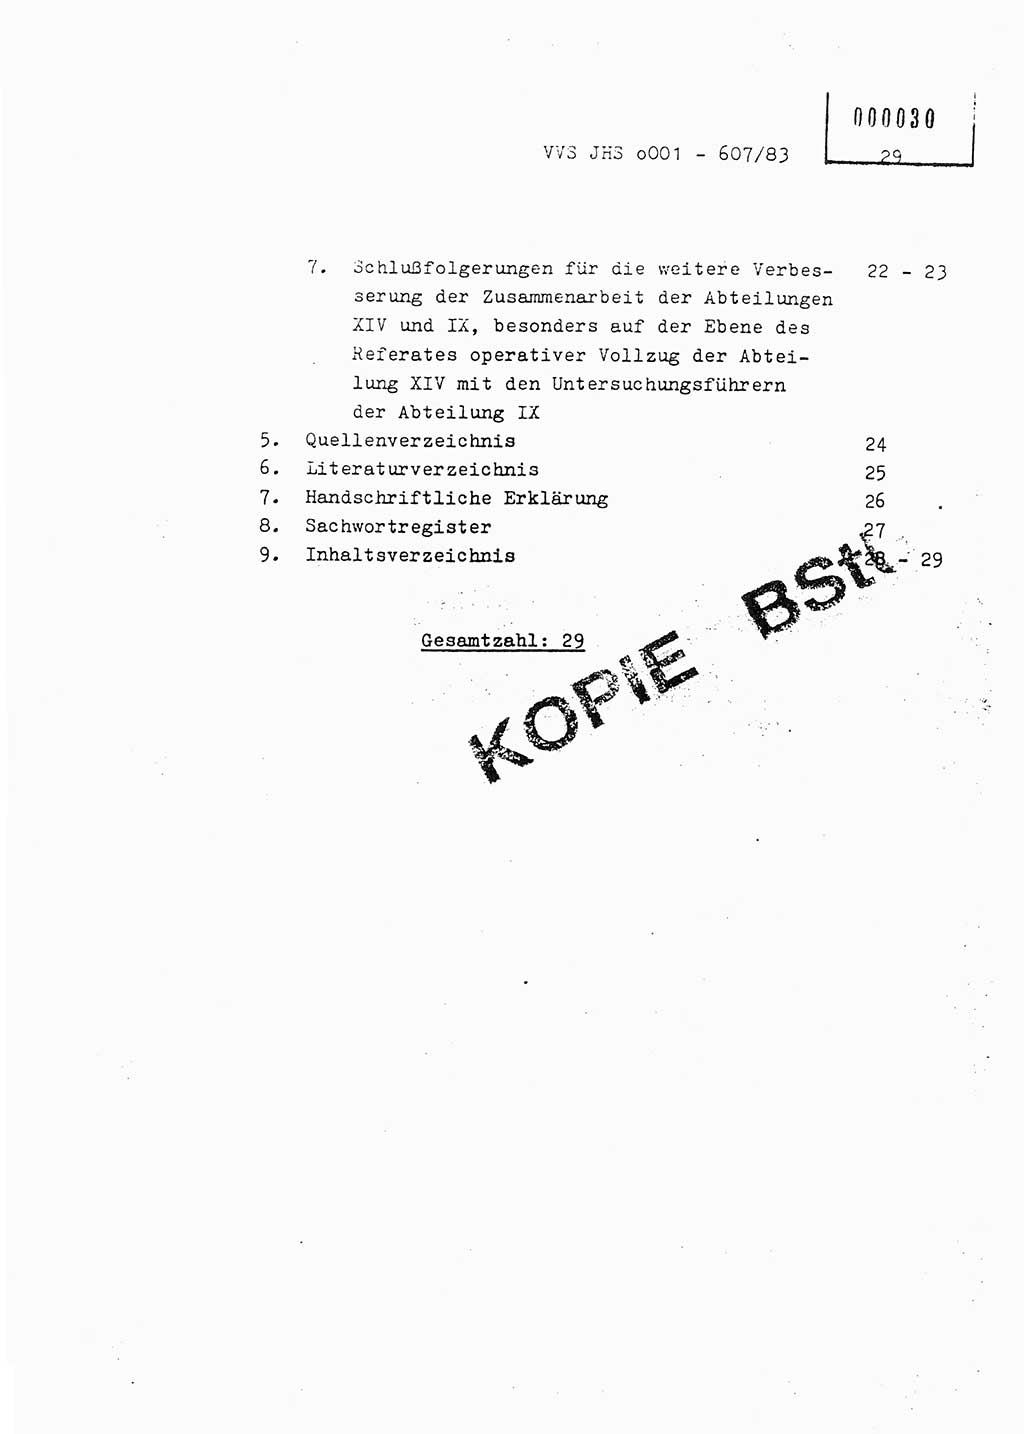 Fachschulabschlußarbeit Oberleutnant Hans-Joachim Saltmann (BV Rostock Abt. ⅩⅣ), Ministerium für Staatssicherheit (MfS) [Deutsche Demokratische Republik (DDR)], Juristische Hochschule (JHS), Vertrauliche Verschlußsache (VVS) o001-607/83, Potsdam 1983, Seite 29 (FS-Abschl.-Arb. MfS DDR JHS VVS o001-607/83 1983, S. 29)